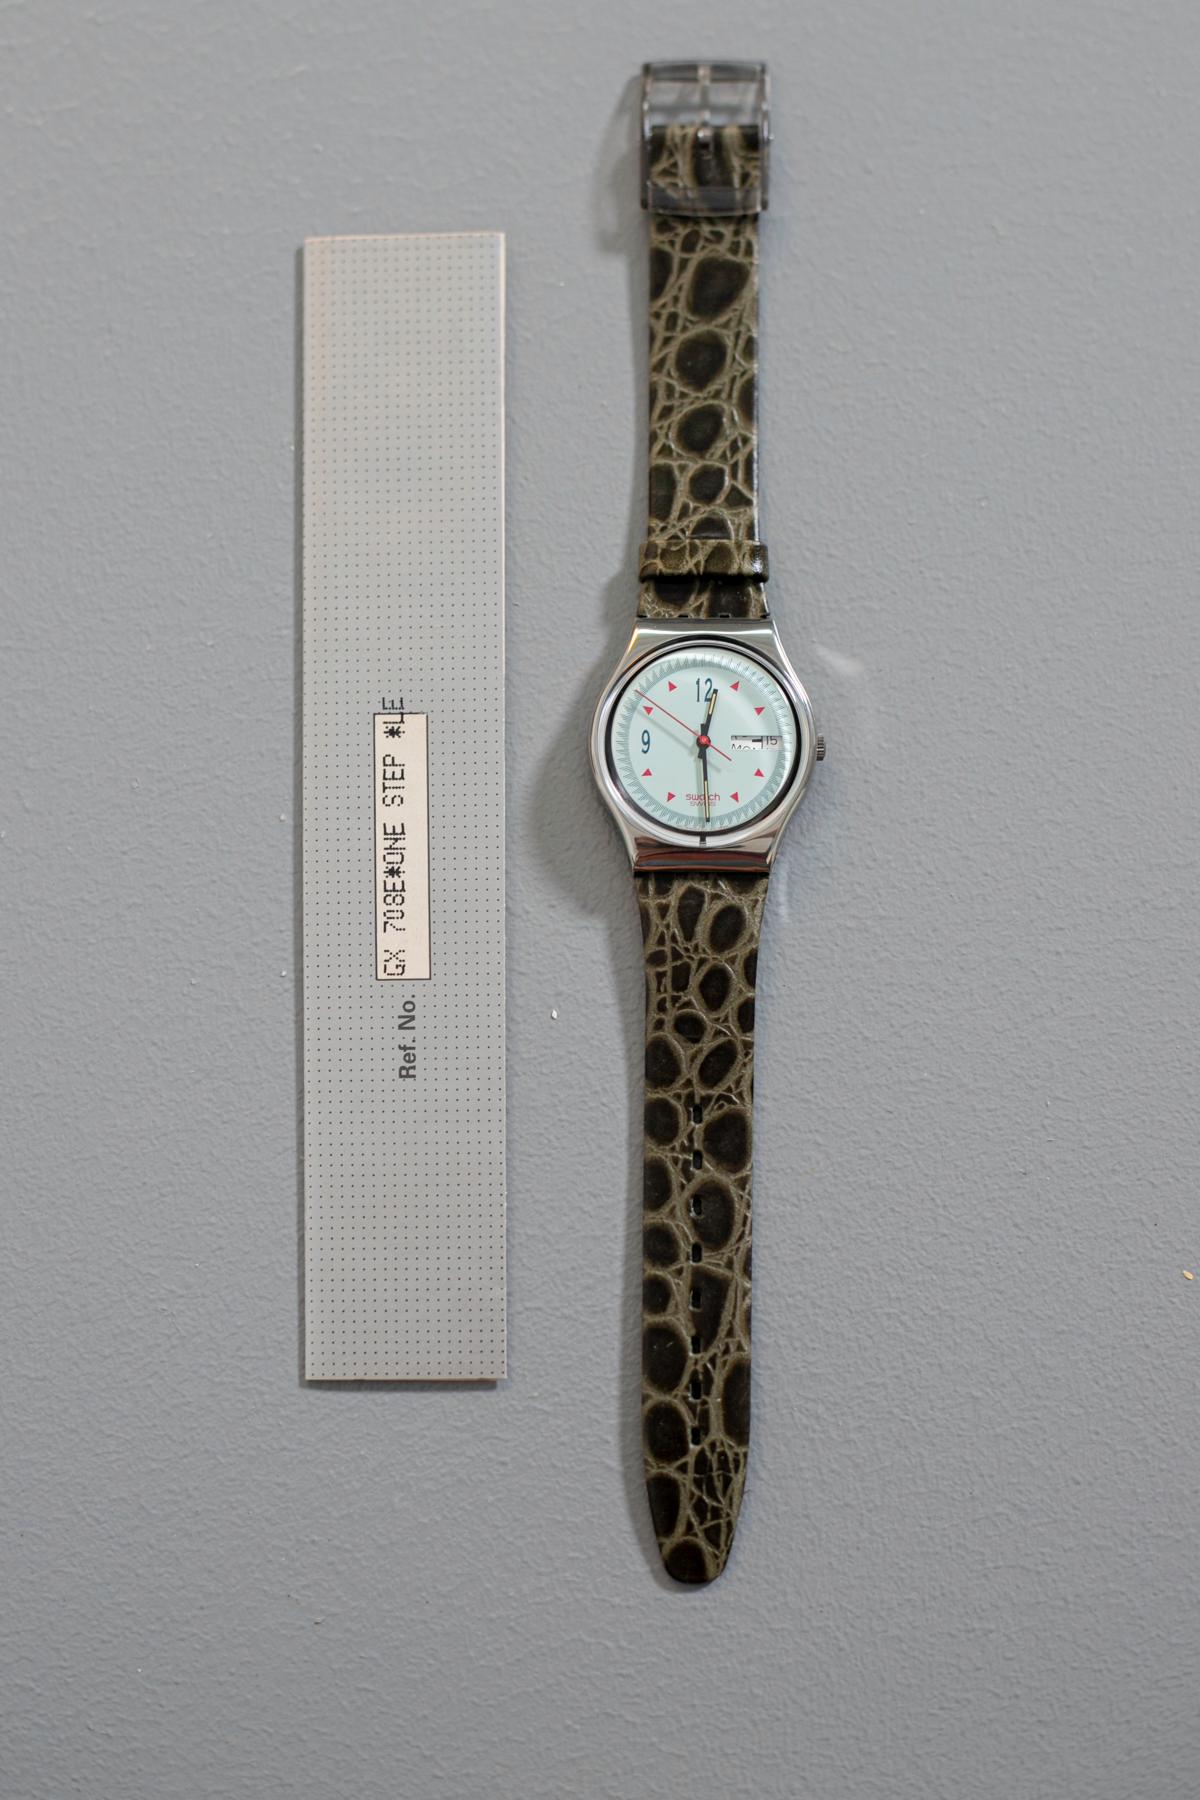 Swatch Vintage aus der Kollektion 1991 mit einem zeitlosen Designarmband: Krokodilleder-Imitat in edlem englischen Grün. Diese Uhr ist sehr empfehlenswert für alle, die klassische Details ohne Übertreibung lieben.

Material des Gehäuses: